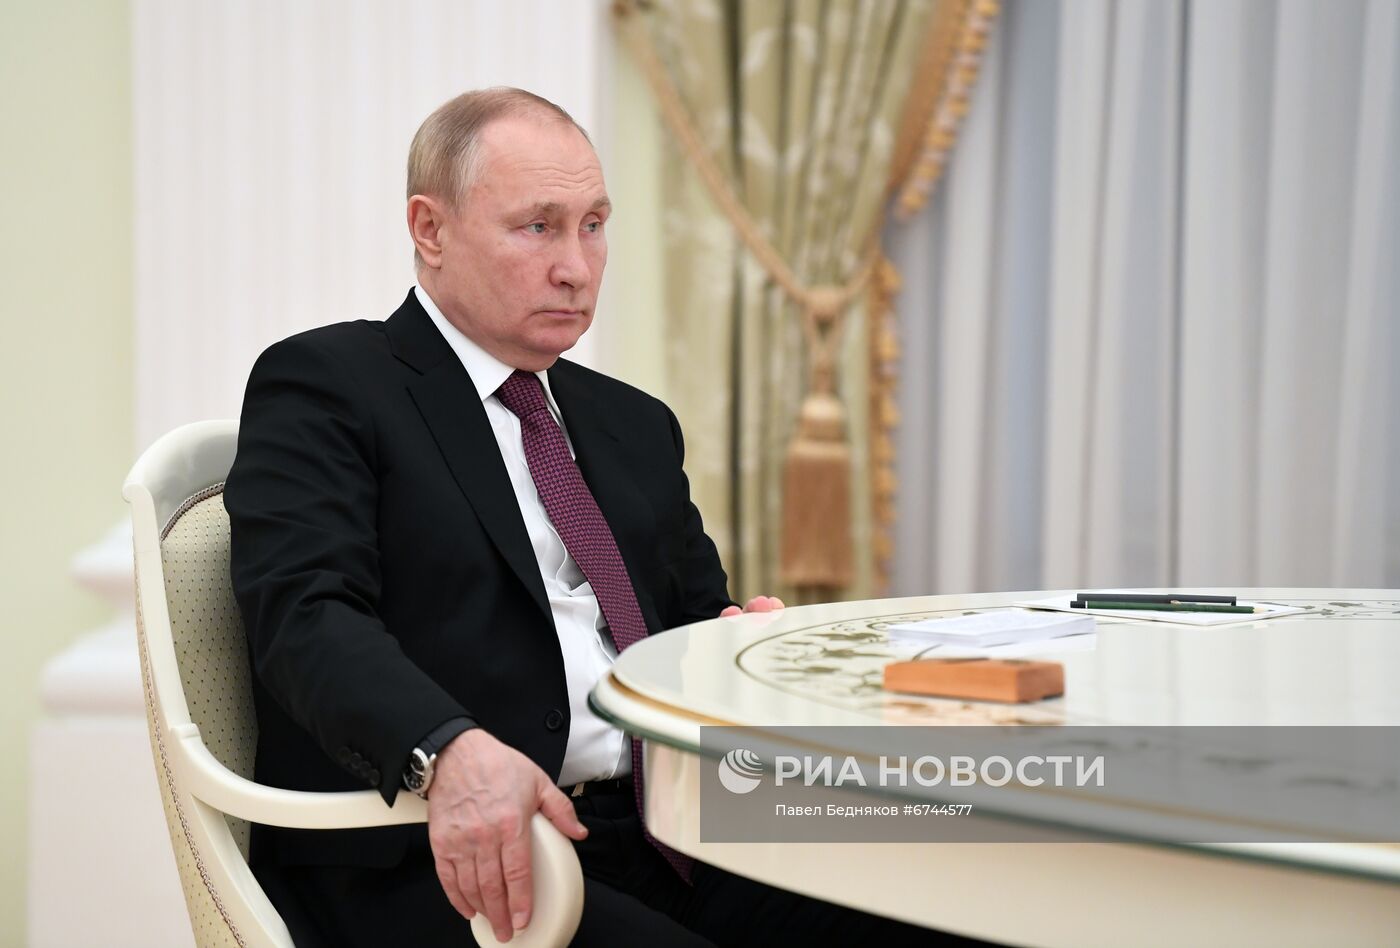 Встреча президента РФ В. Путина с президентом Ирана Э. Раиси